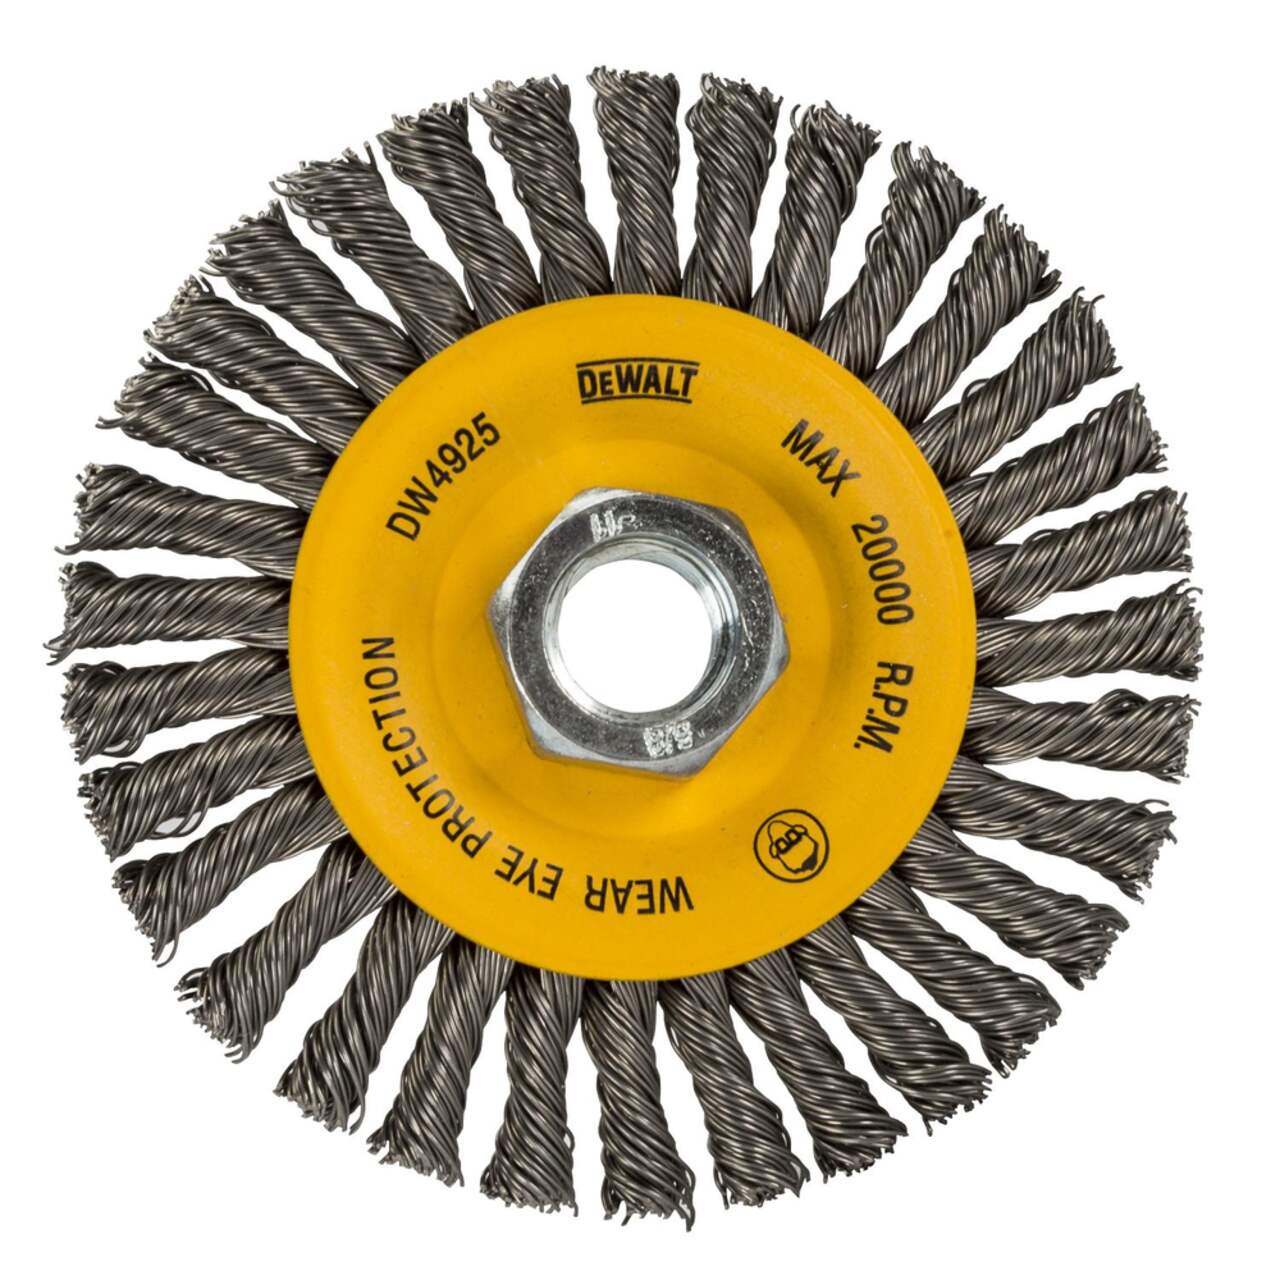 DEWALT DW4925 4x 5/8-in-11 Carbon Steel Stringer Bead Wire Wheel Brush